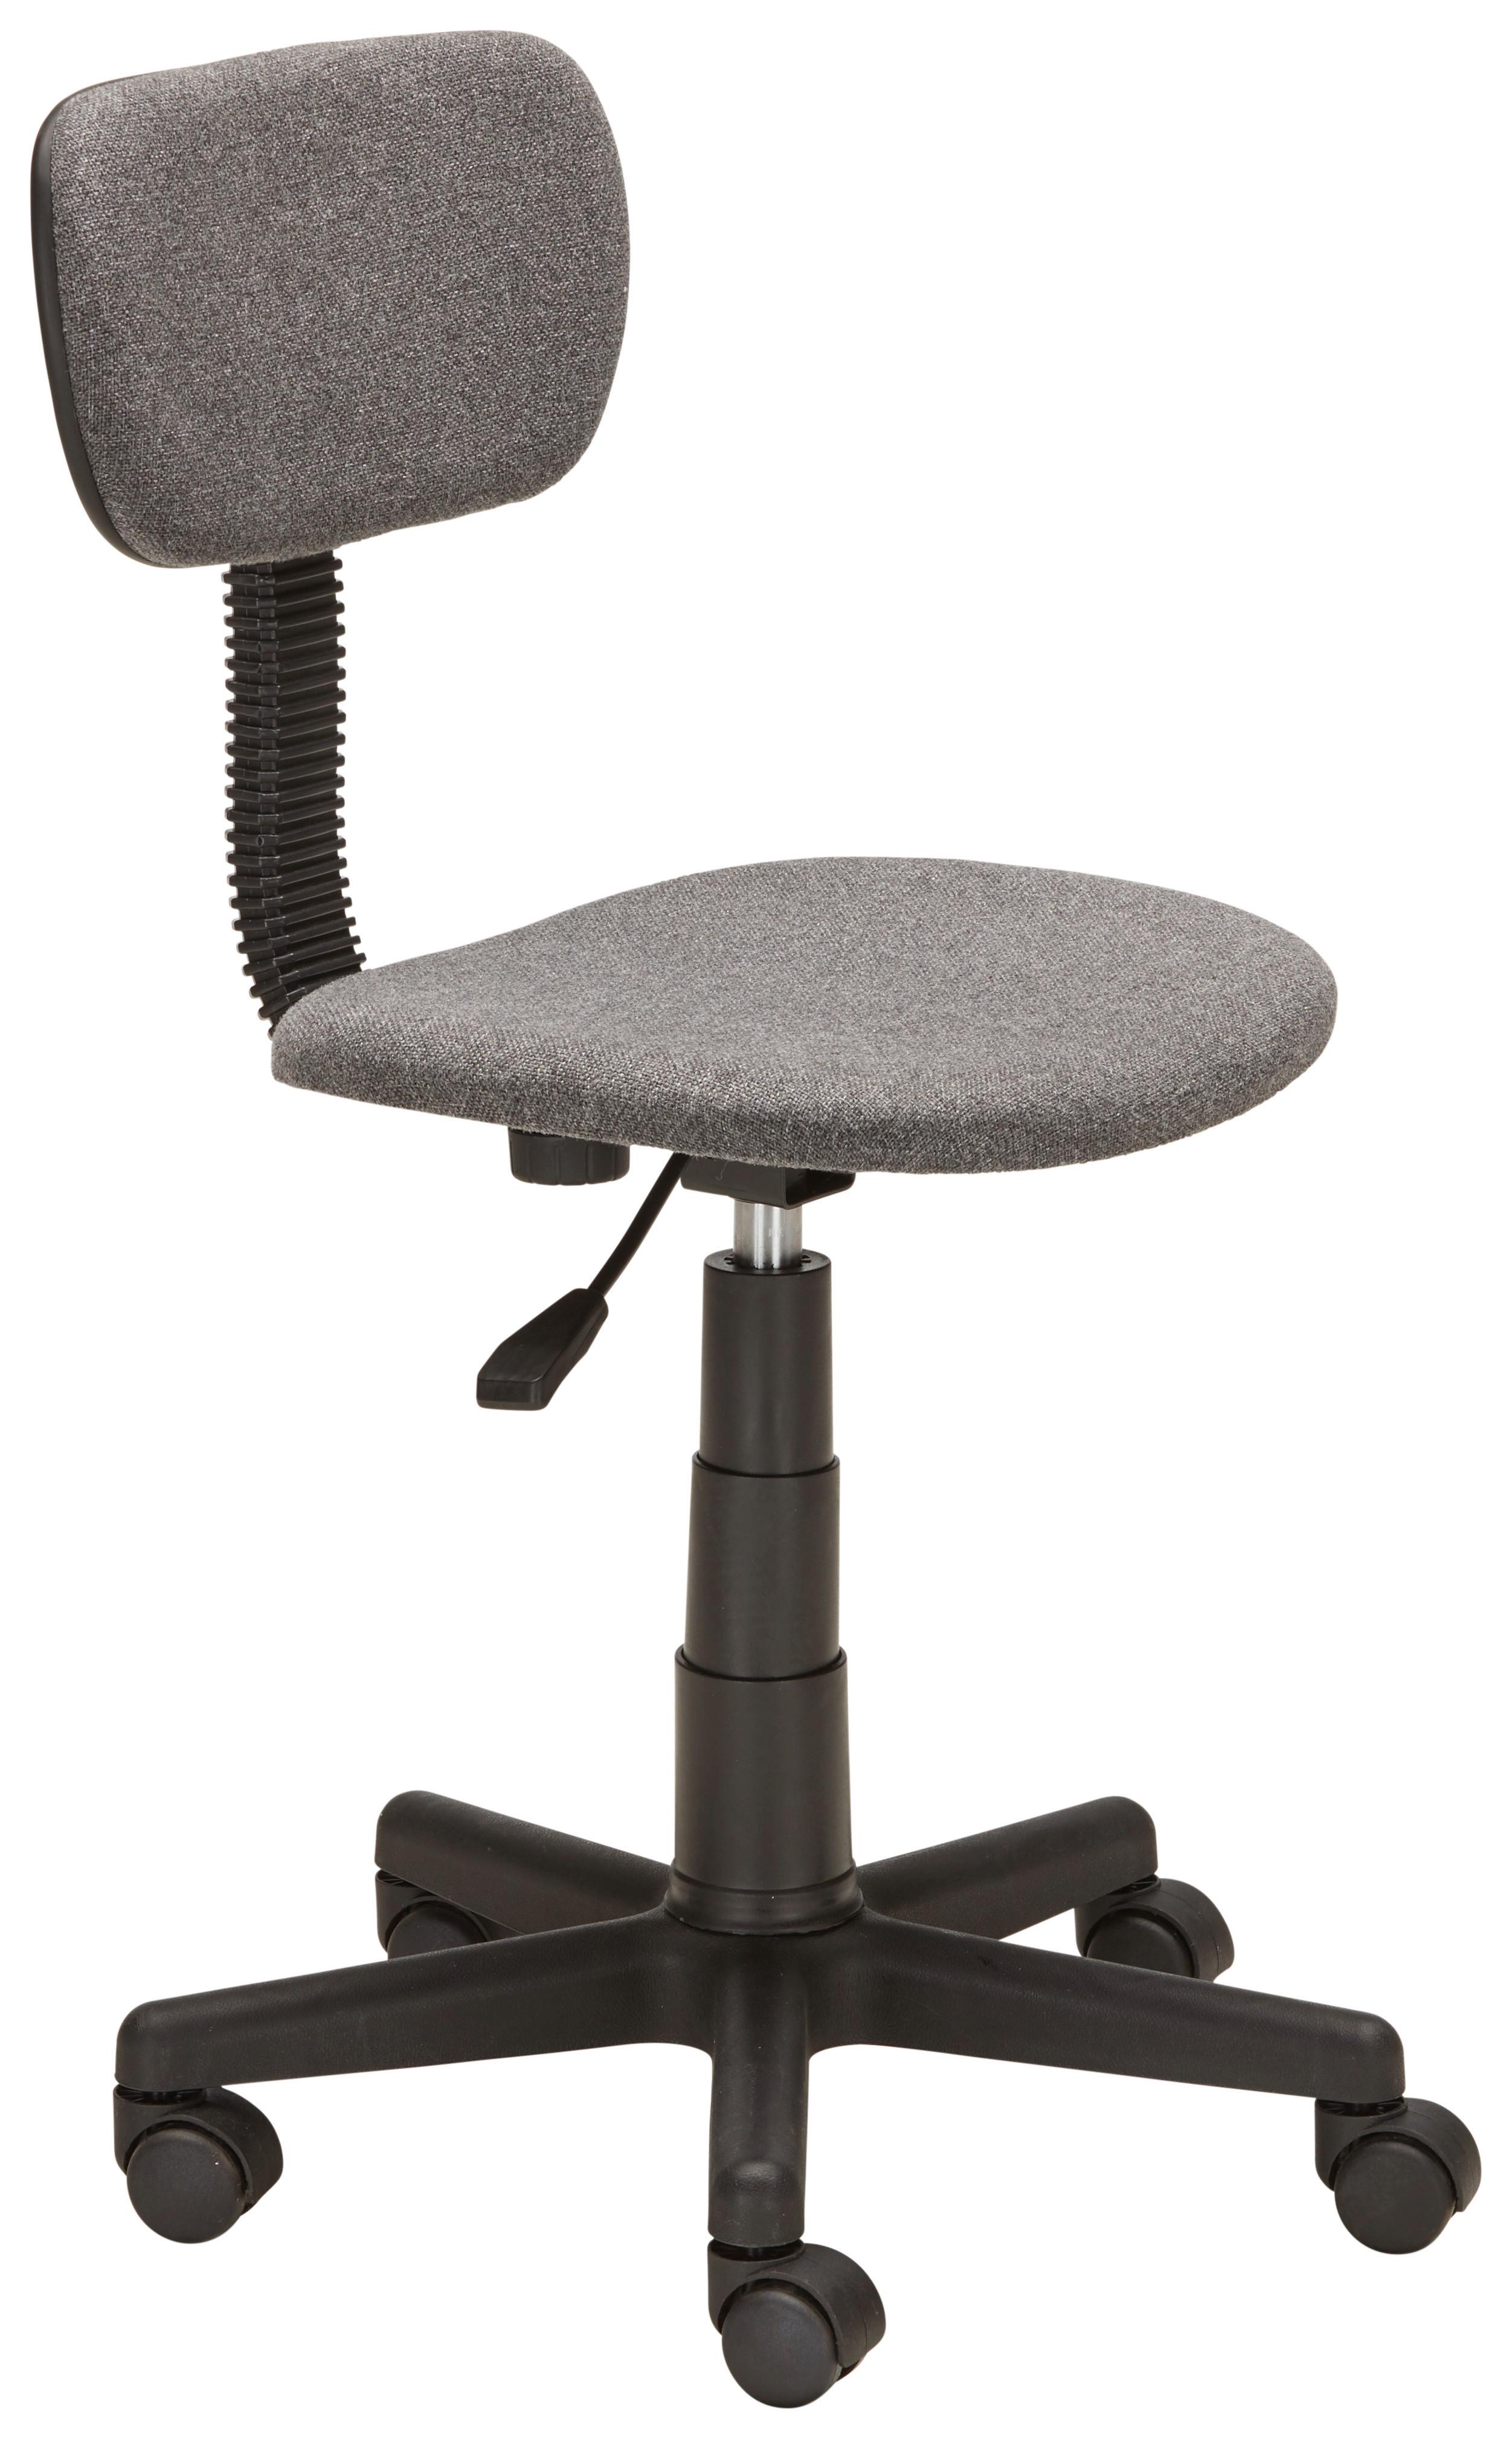 Otočná Židle Tim *cenový Trhák* - šedá/černá, Lifestyle, kov/textil (40/73-85/47cm) - Based